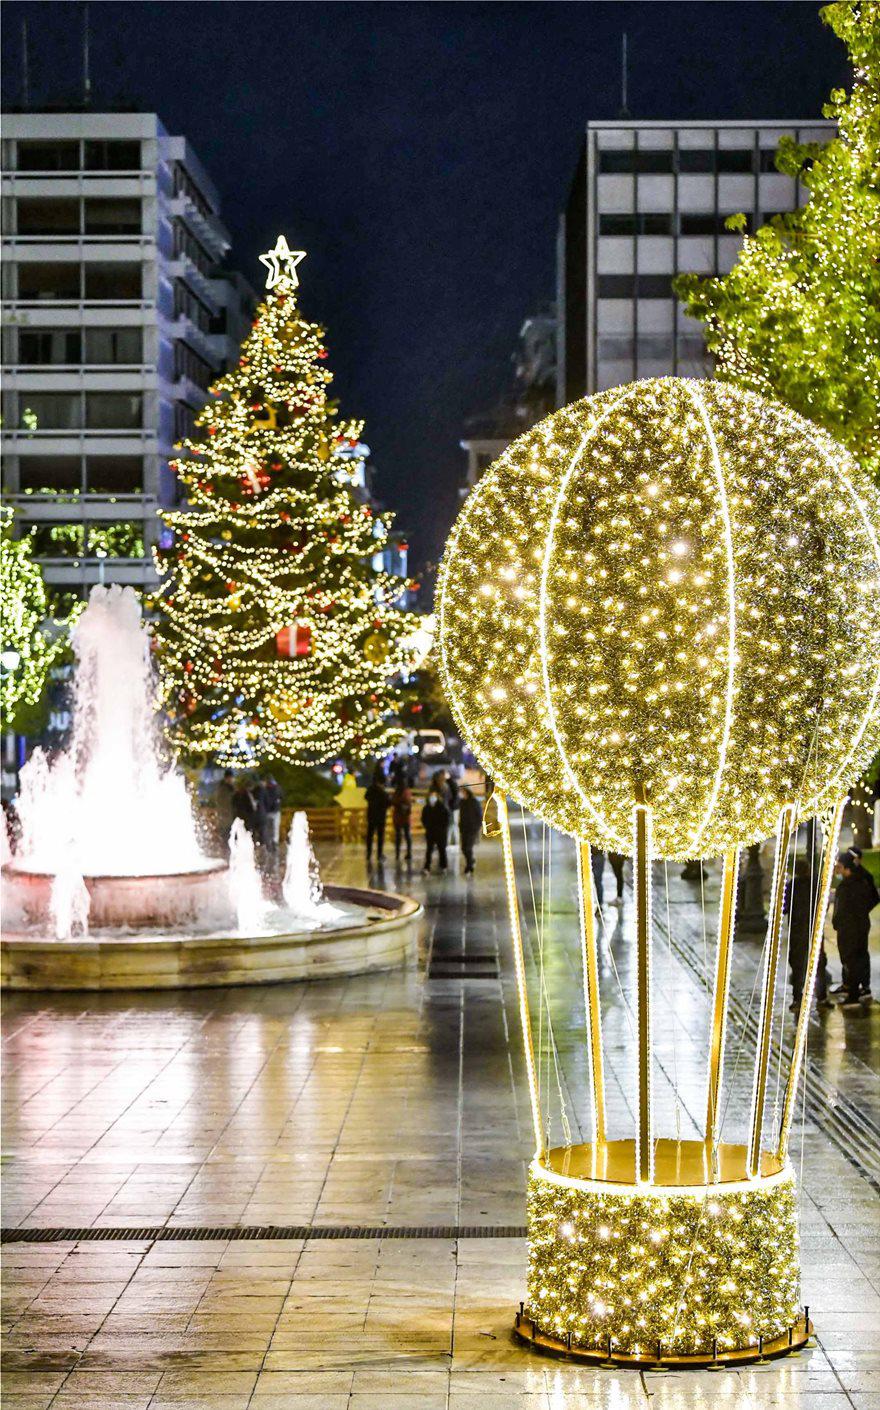 Χριστούγεννα στην Αθήνα: Την Πέμπτη ανάβει το δέντρο στο Σύνταγμα - Ολο το πρόγραμμα των εκδηλώσεων - ΕΛΛΑΔΑ